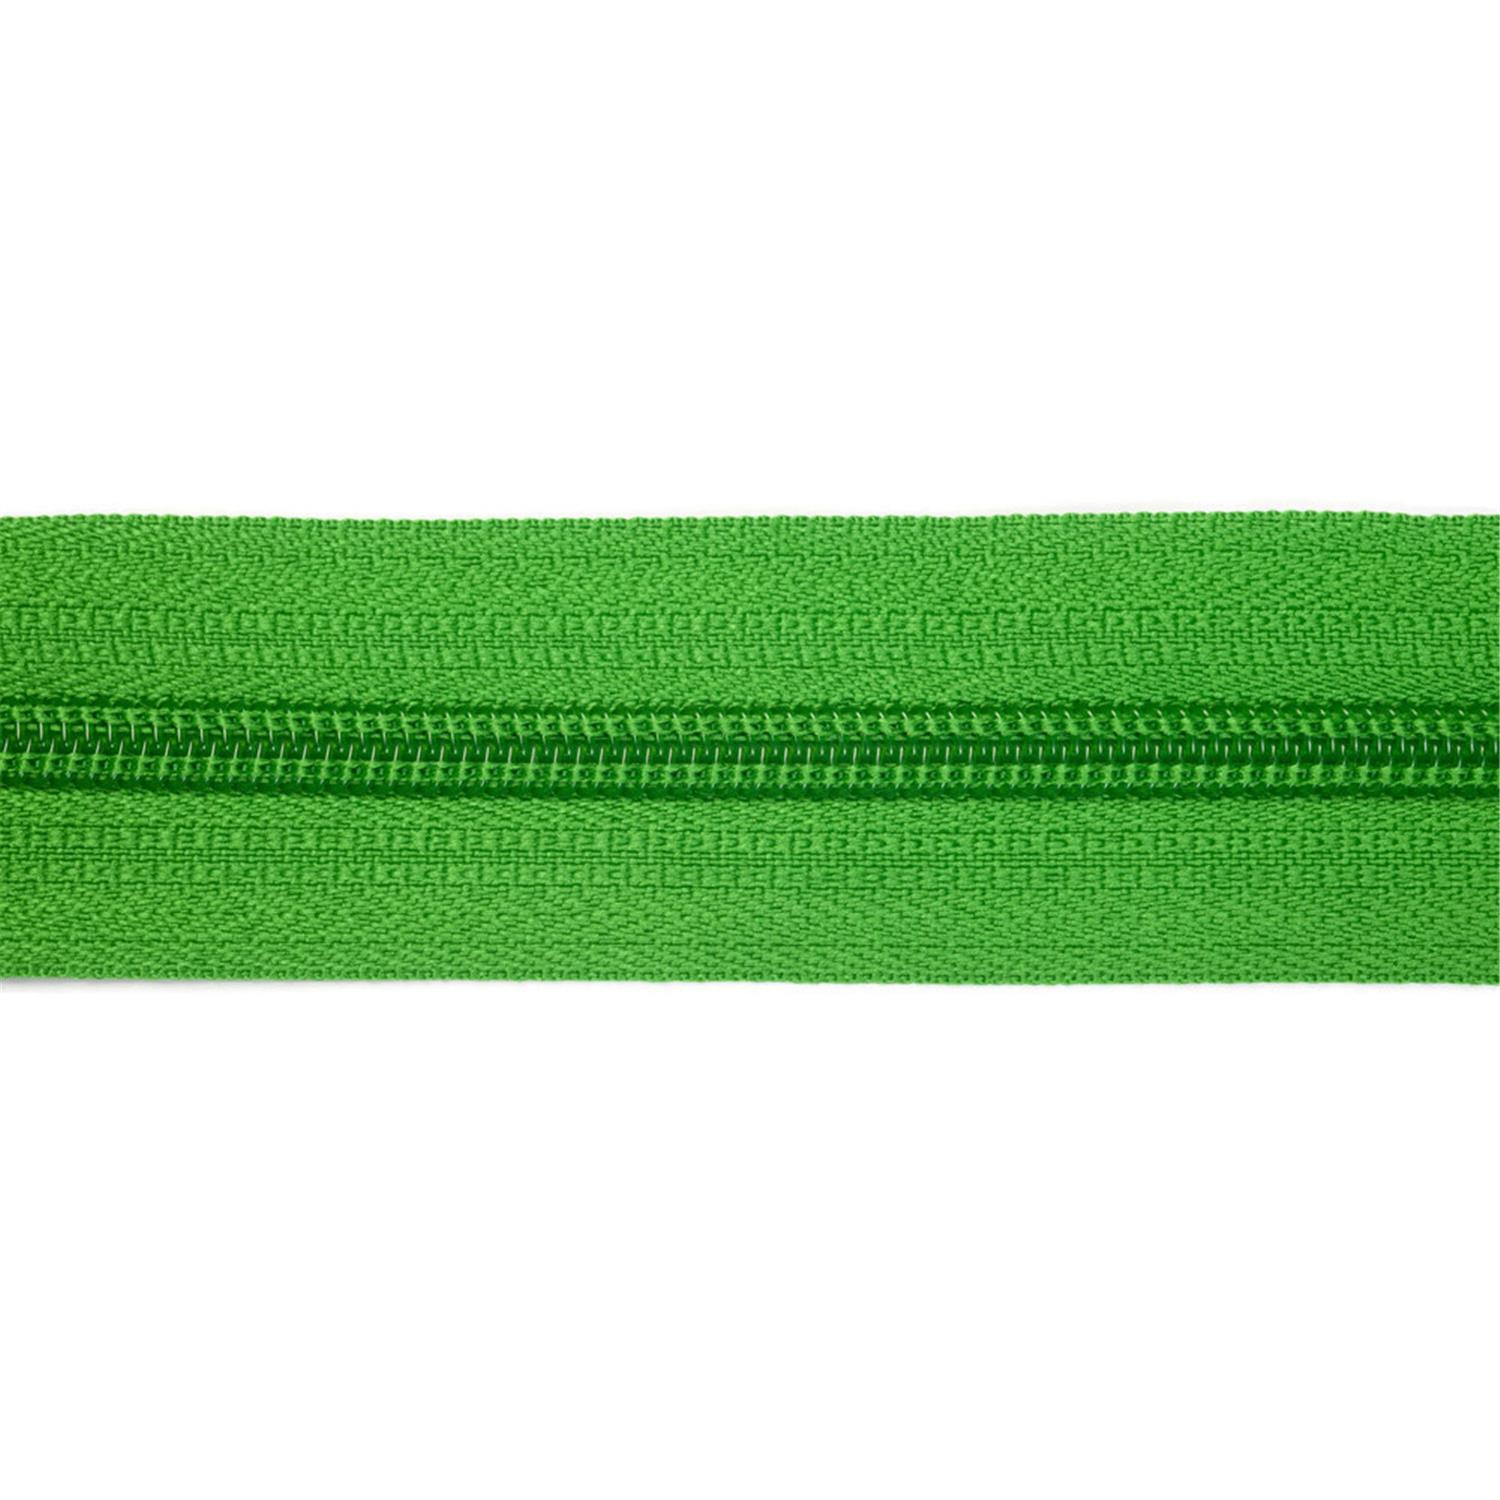 Reißverschluss endlos 5mm grassgrün #82 5 Meter